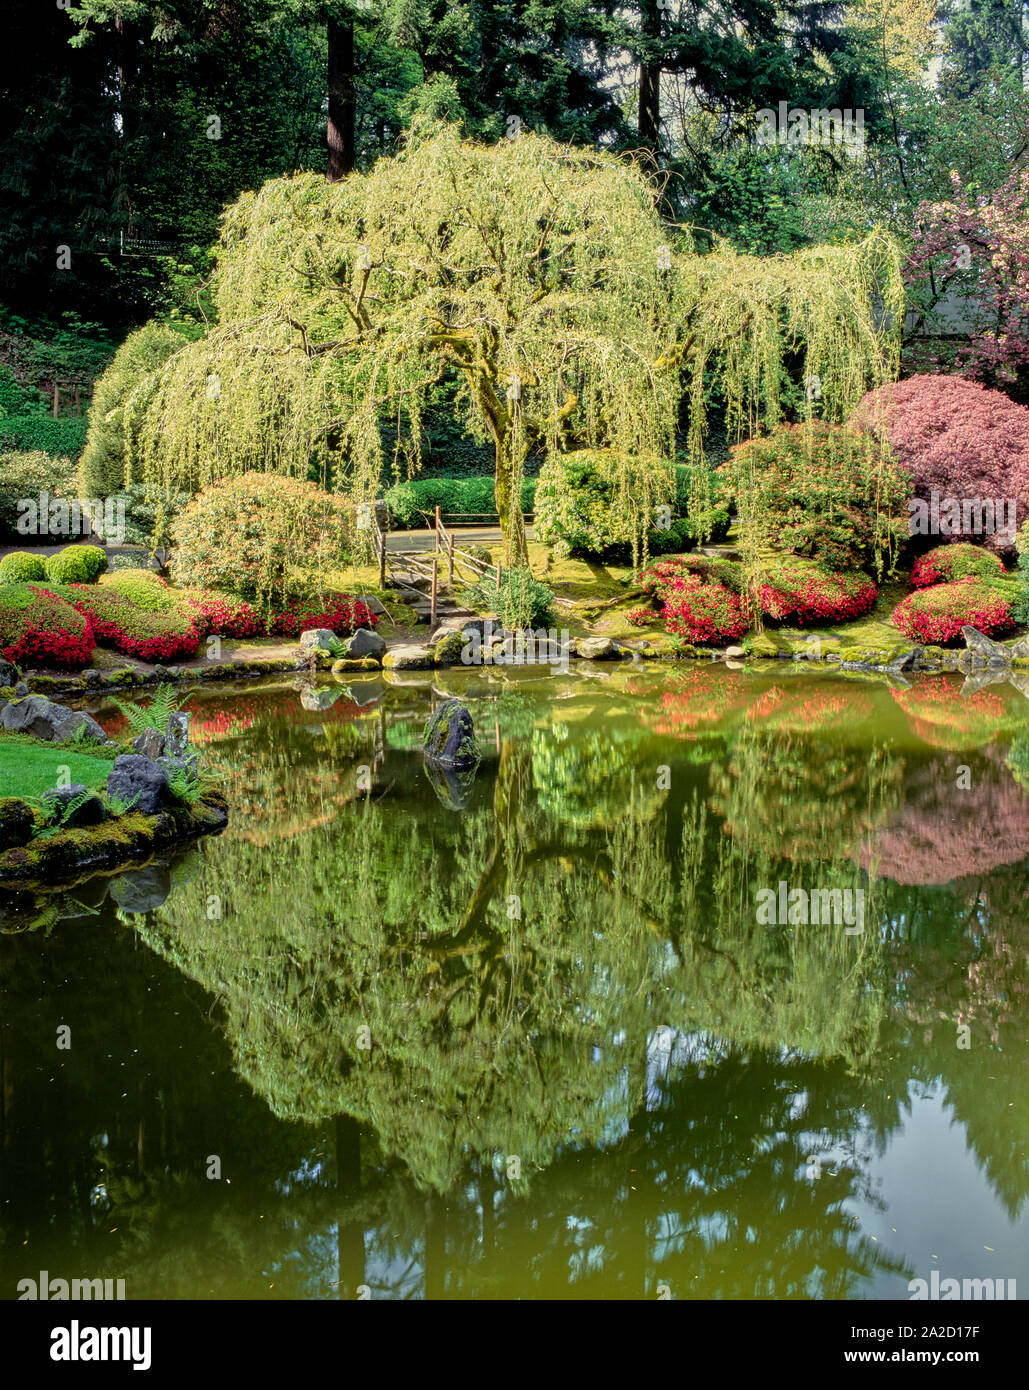 Obere Teich in einem Spaziergang Teich Garten, Japanischer Garten, Portland, Oregon, USA Stockfoto